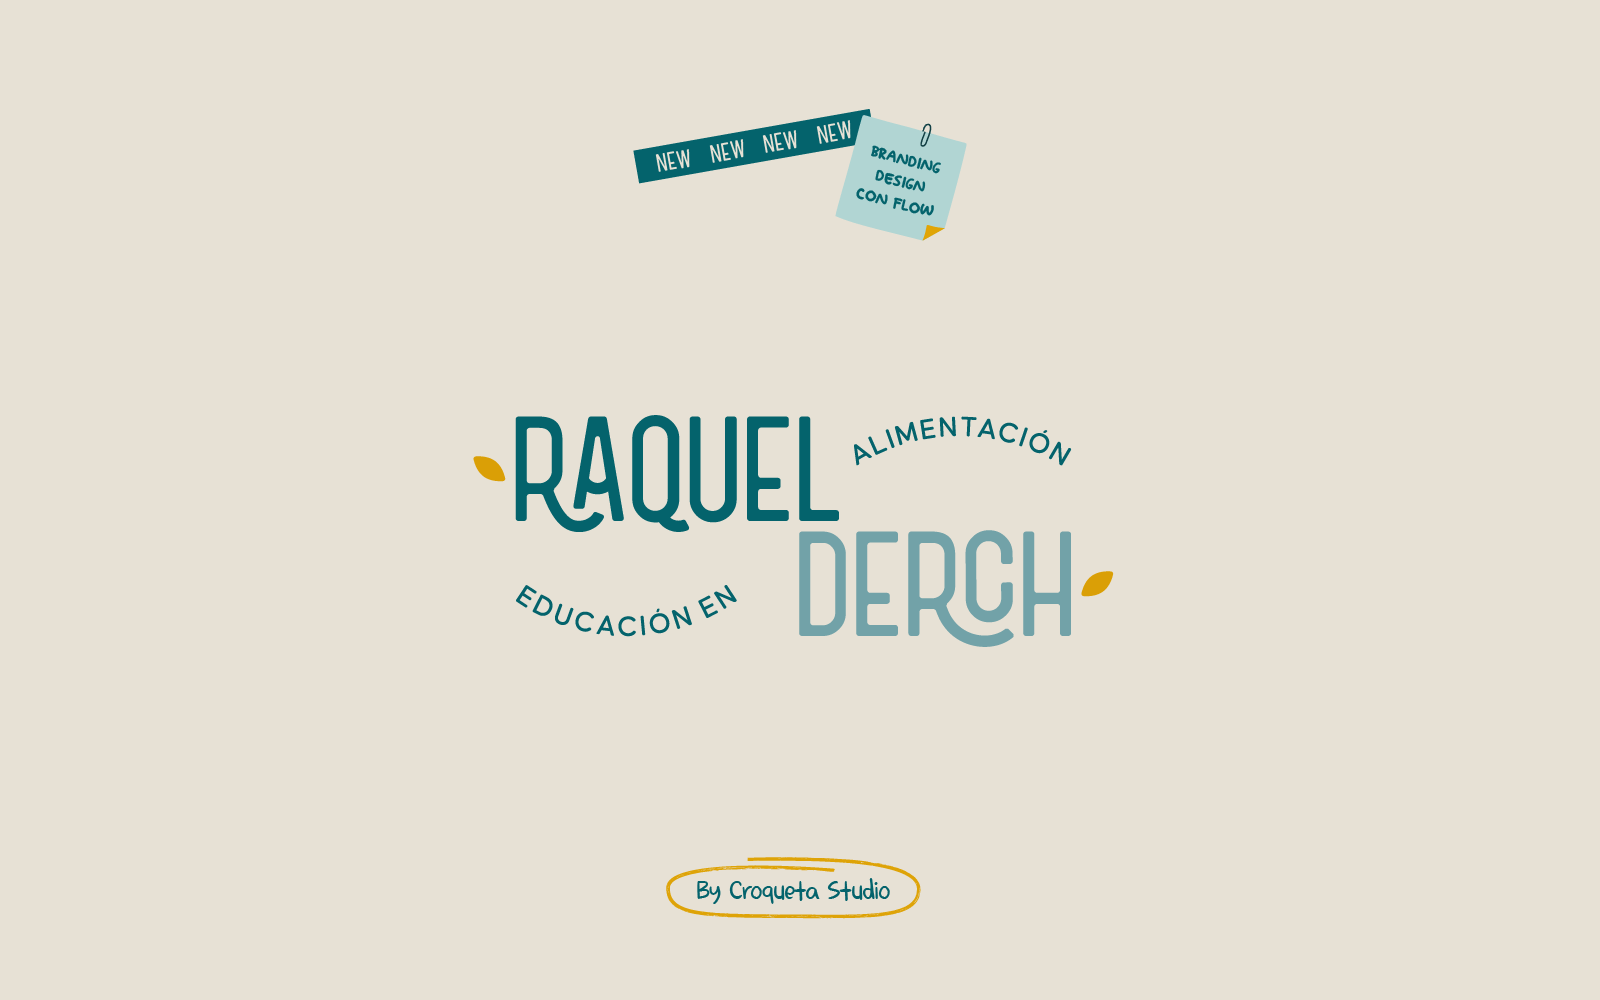 Raquel Derch  - Diseño de Branding para dietista nutricionista - Barcelona